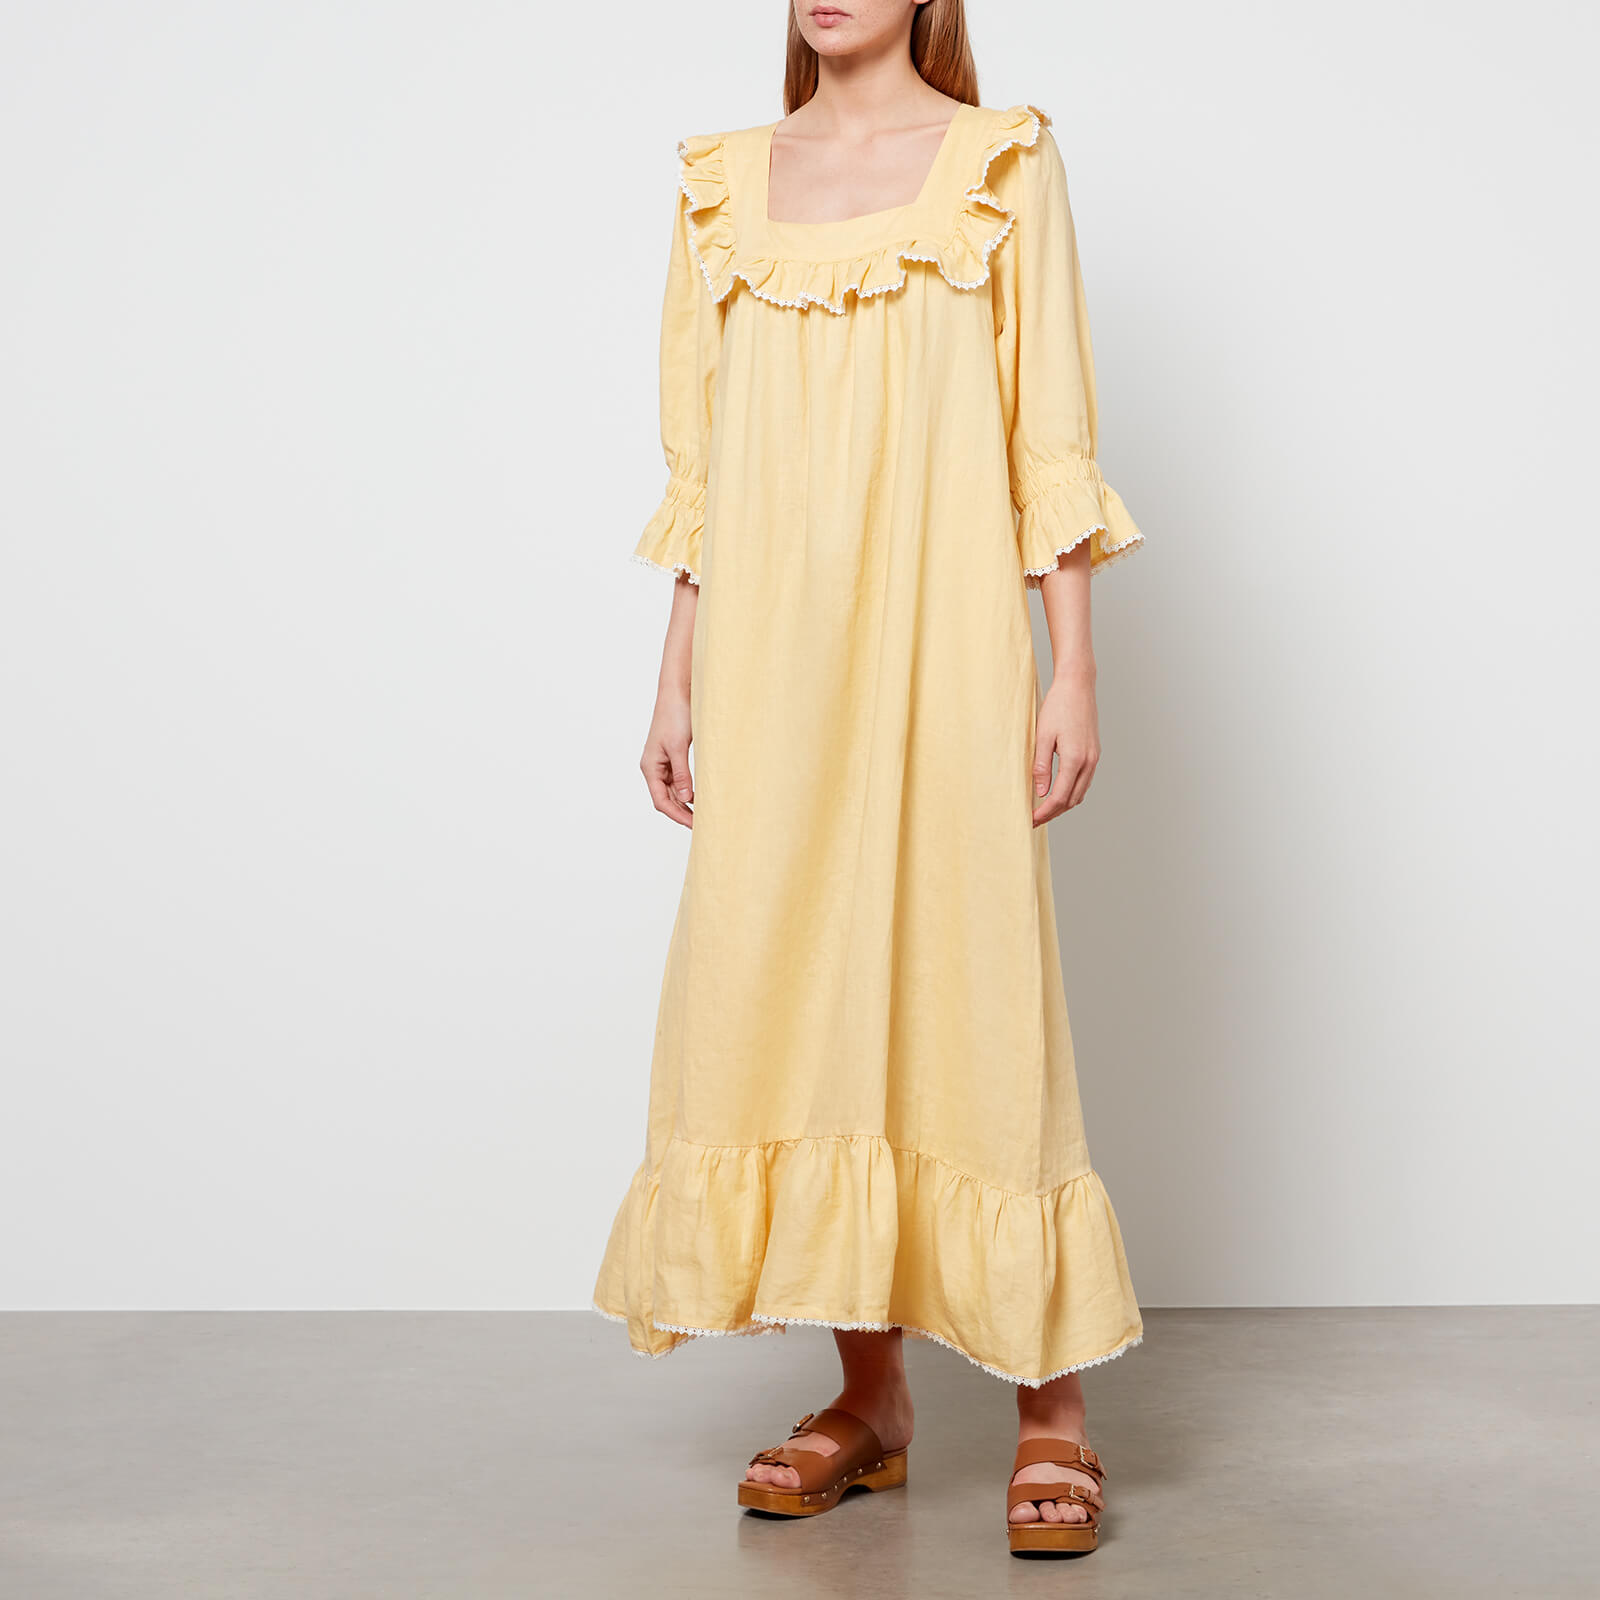 Meadows Women's Valerian Dress - Butter - UK 6